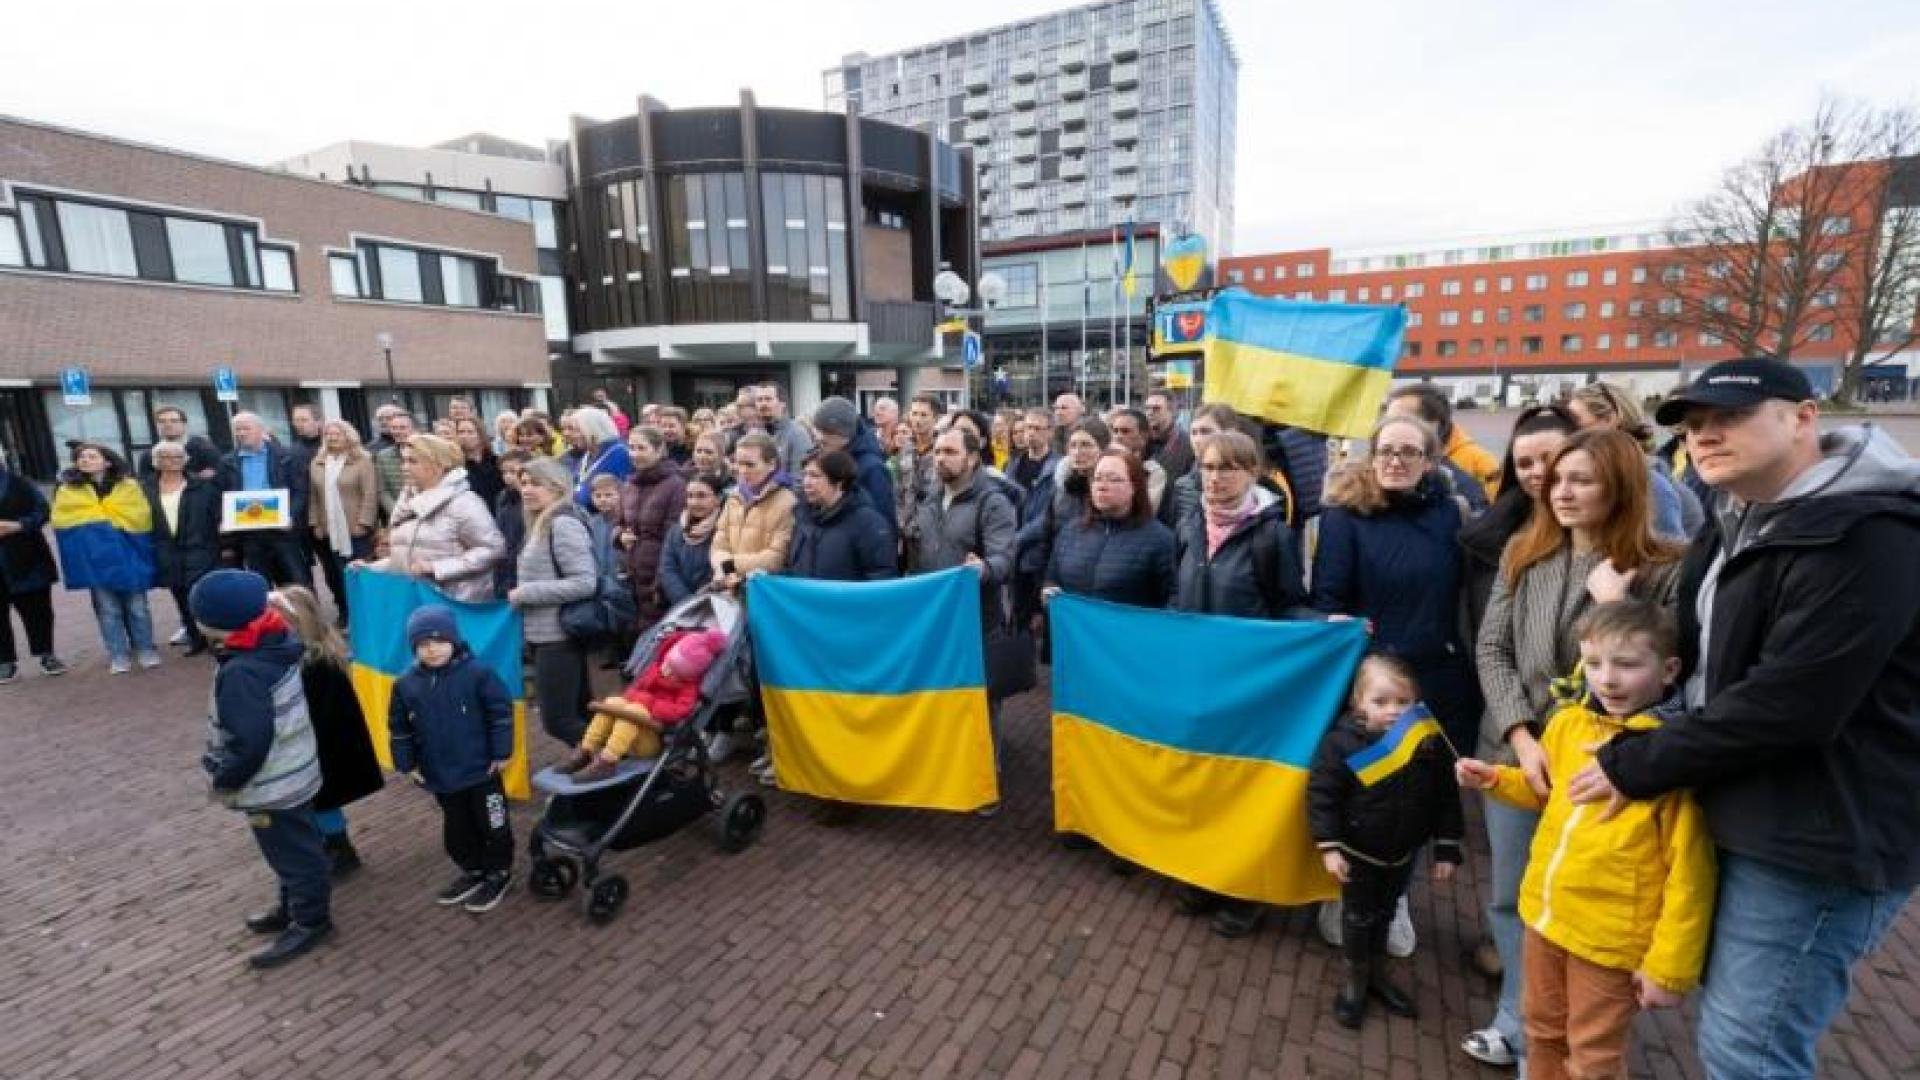 Menigte met Oekraïense vlaggen op het Raadshuisplein